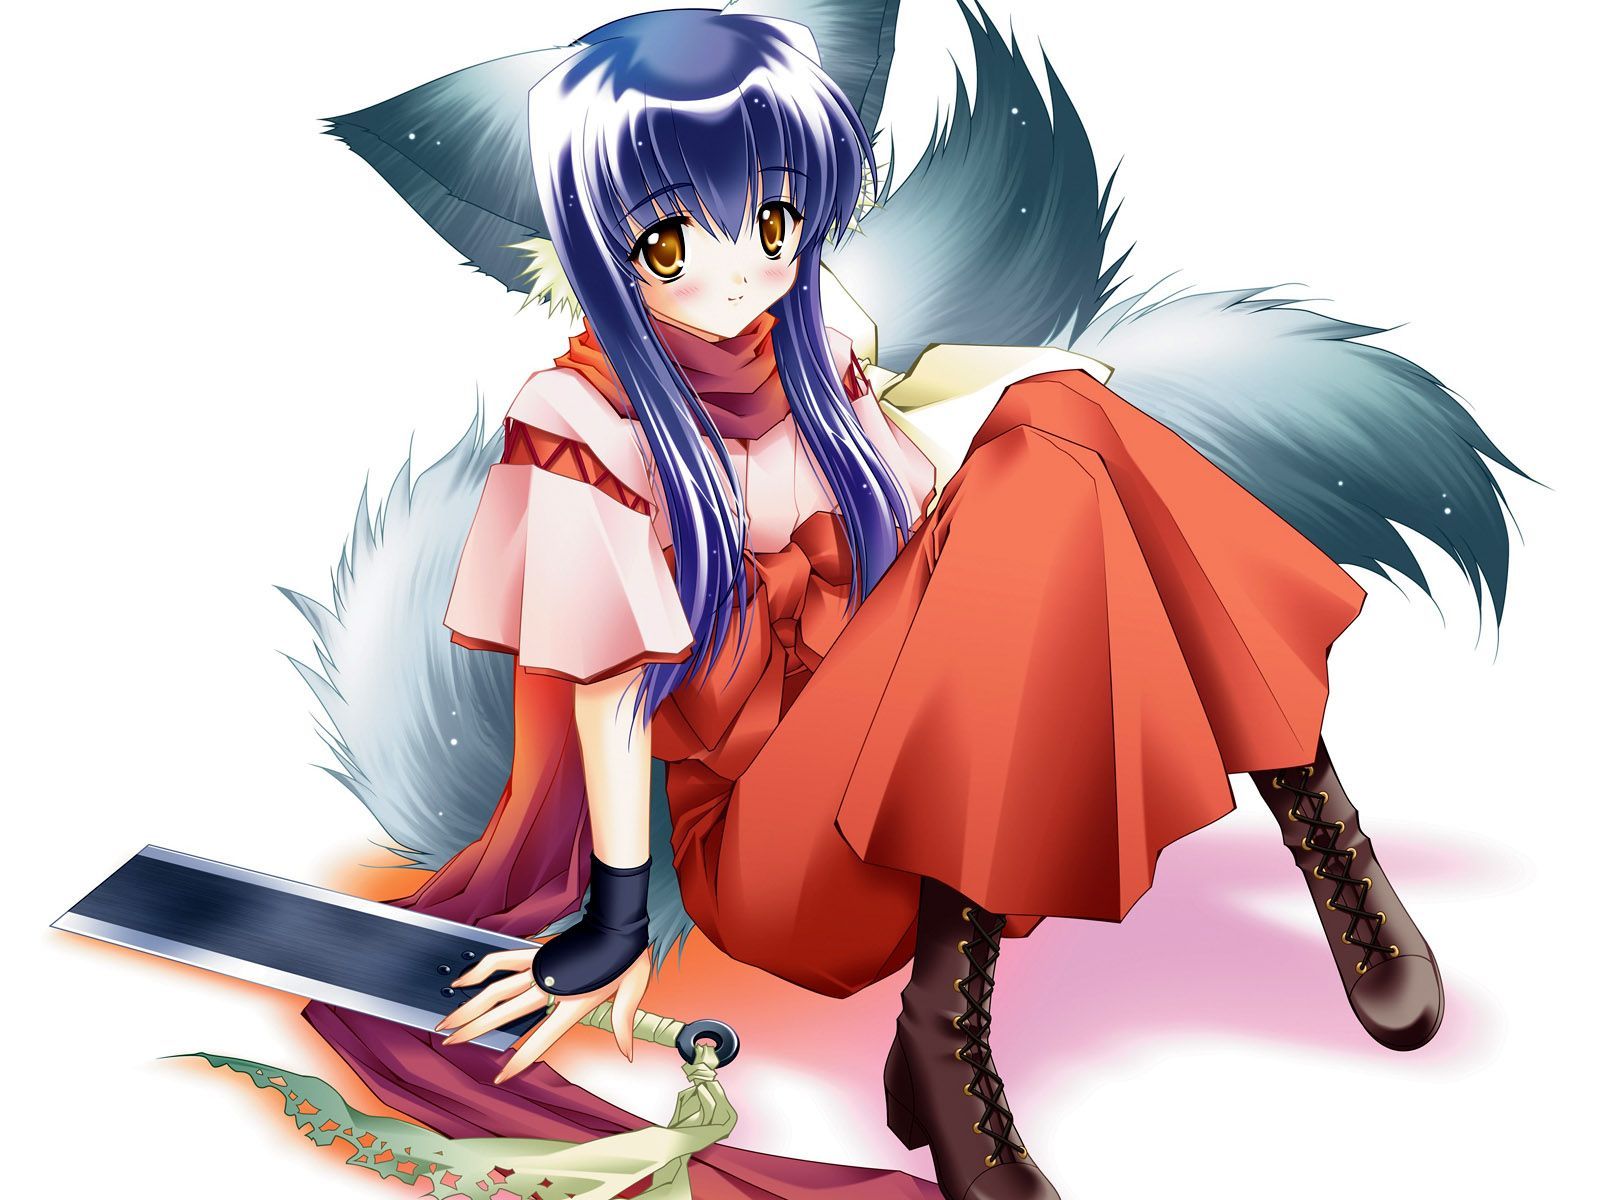 anime cat girl. Little girl wallpaper and image. Anime wolf girl, Anime warrior, Anime